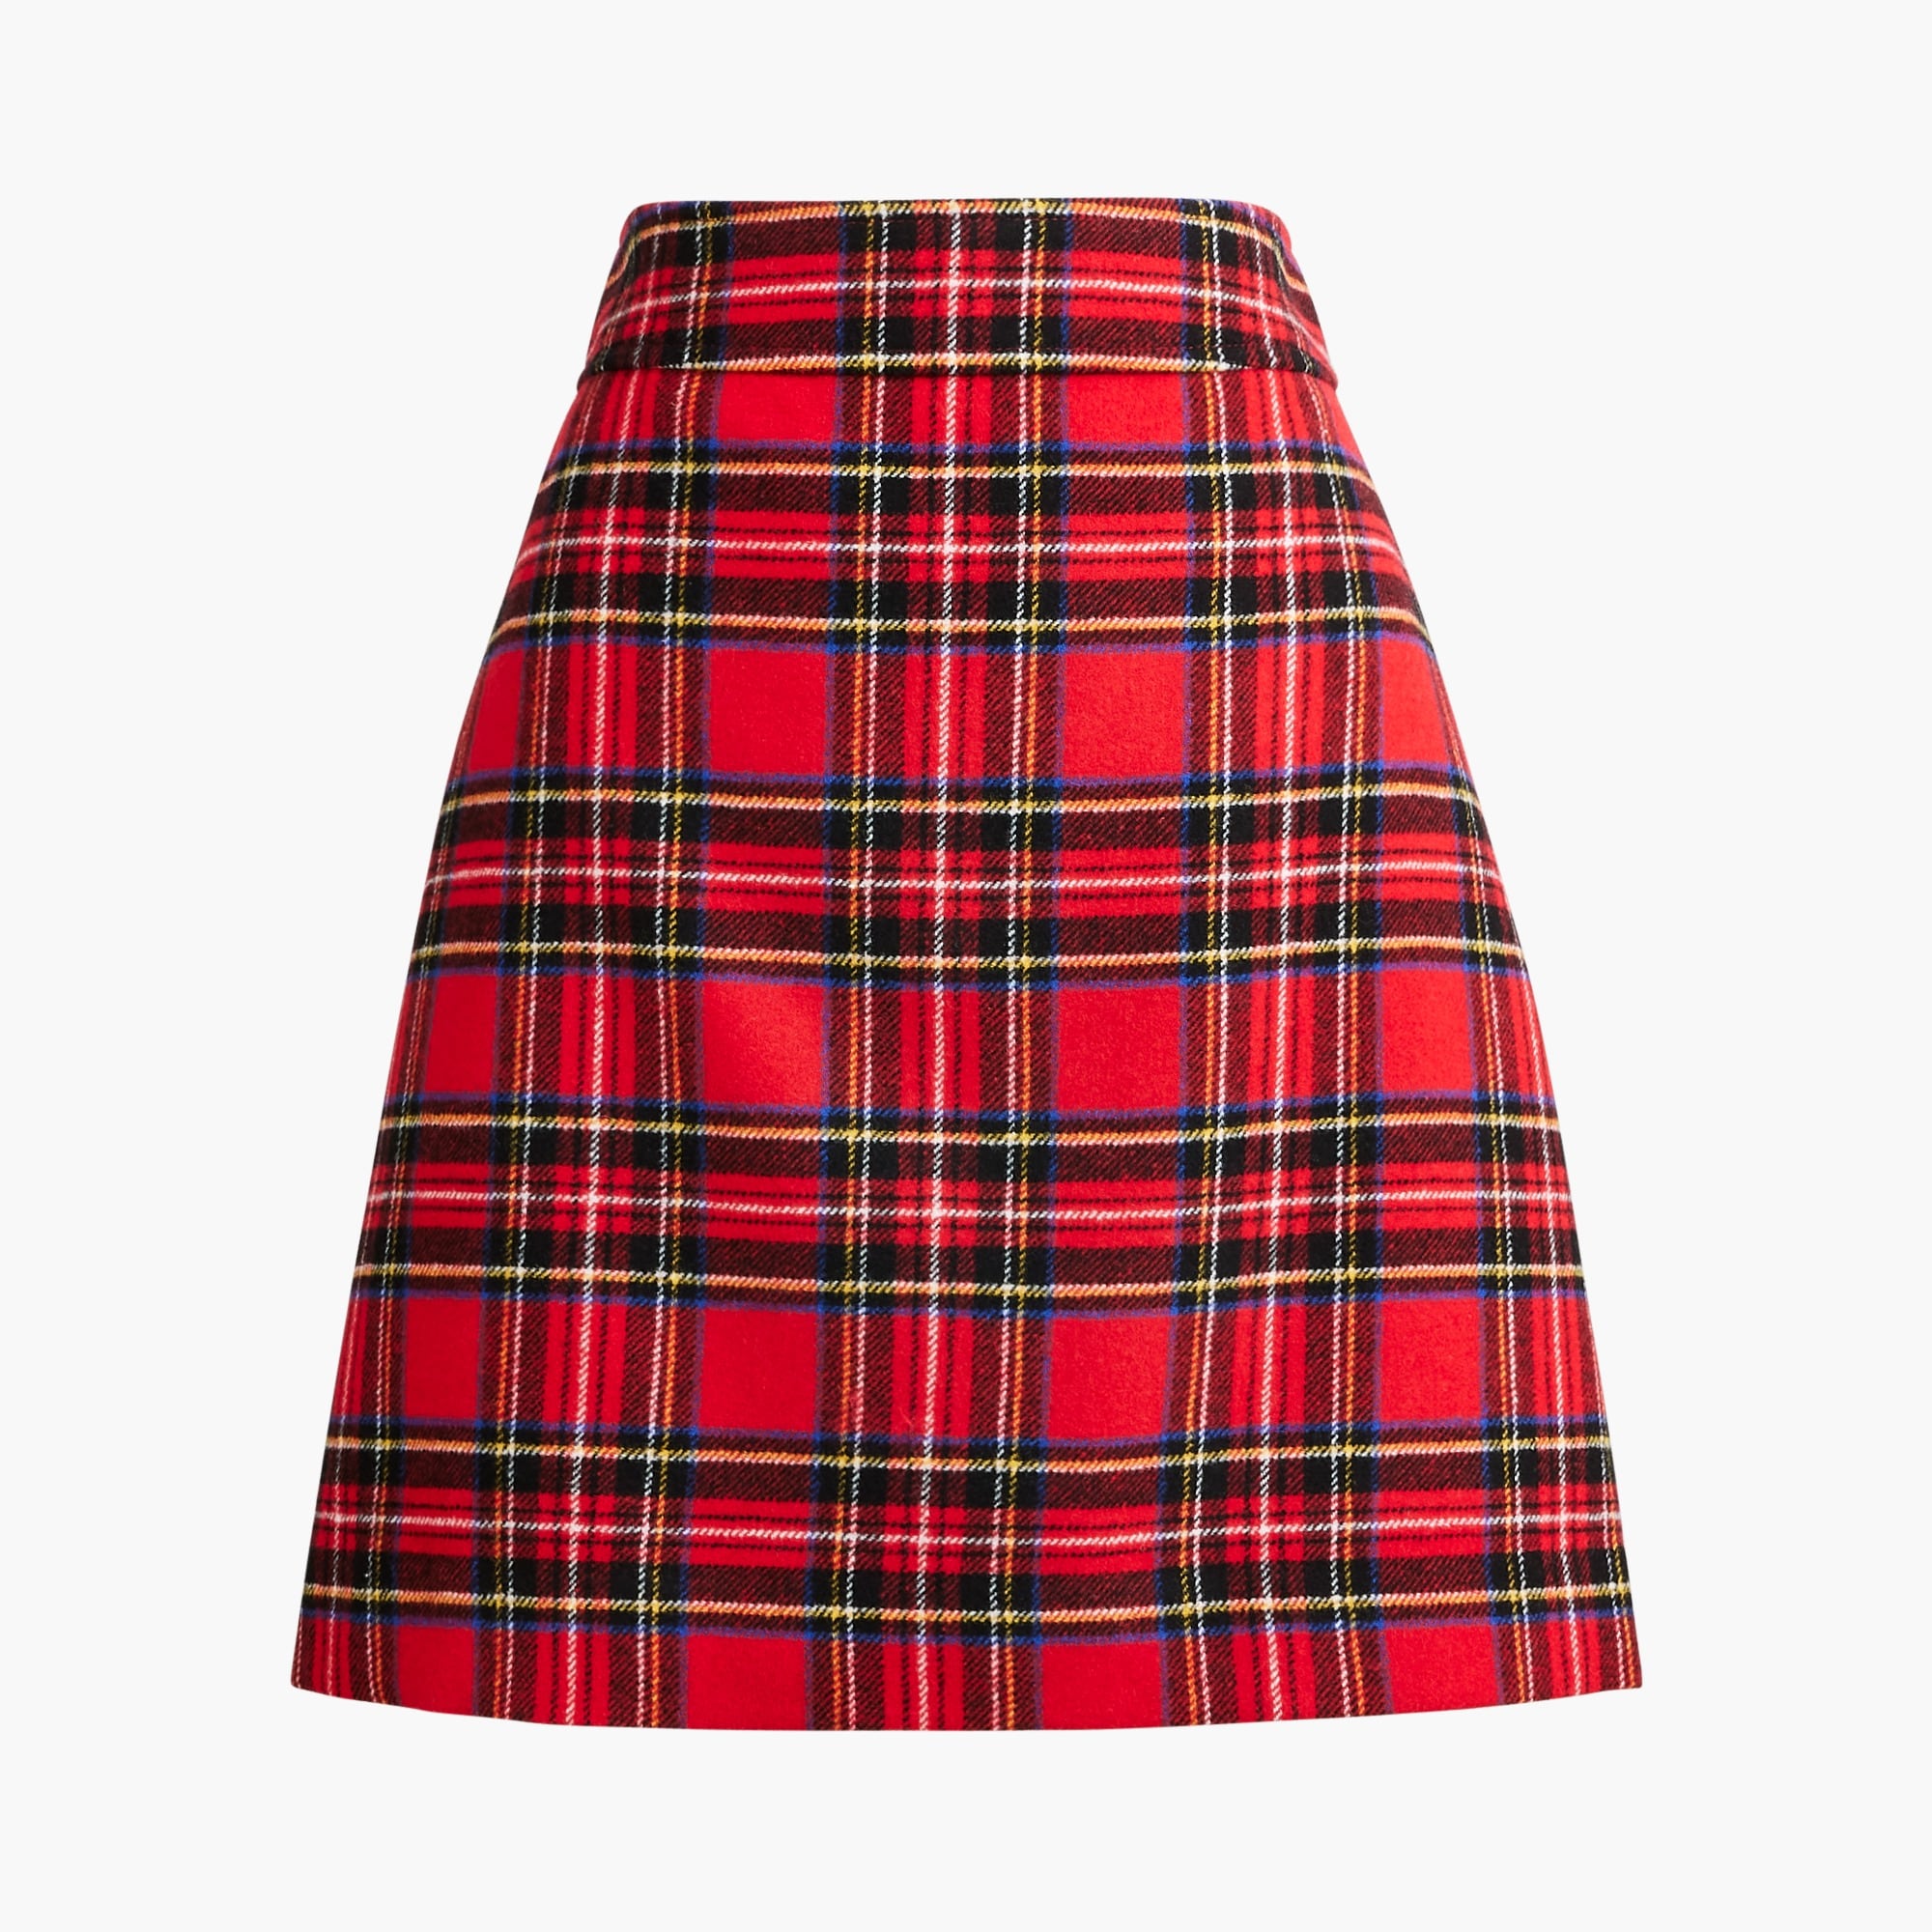  Tartan A-line skirt